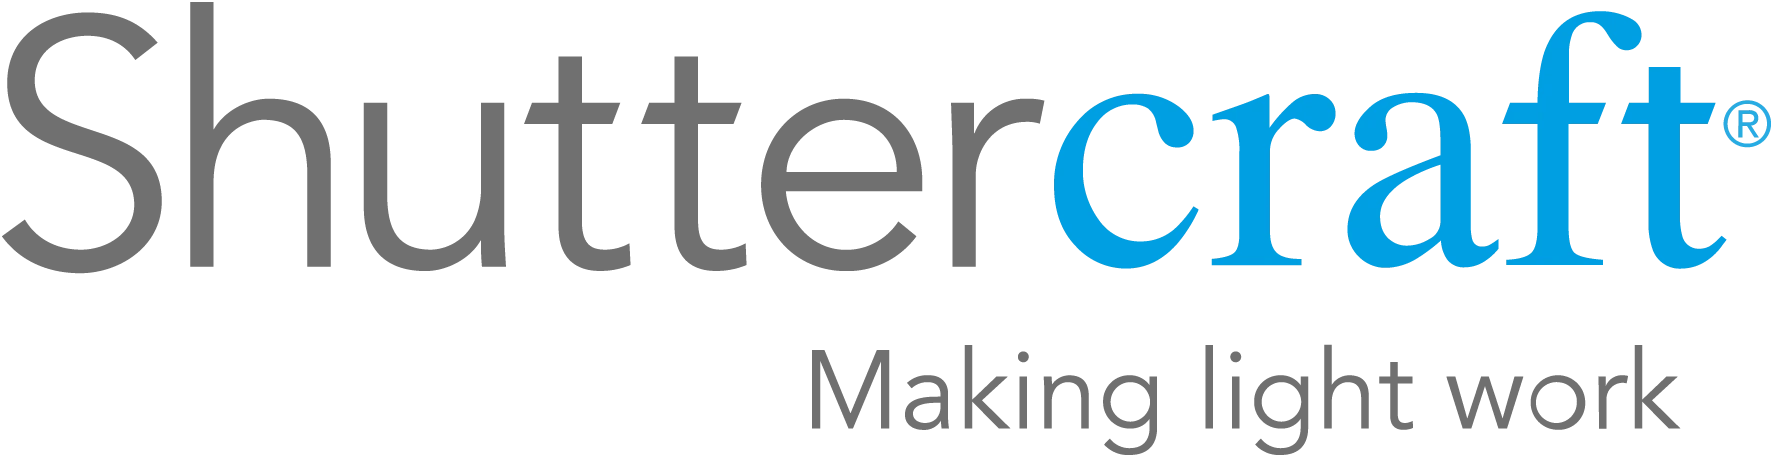 shuttercraft logo